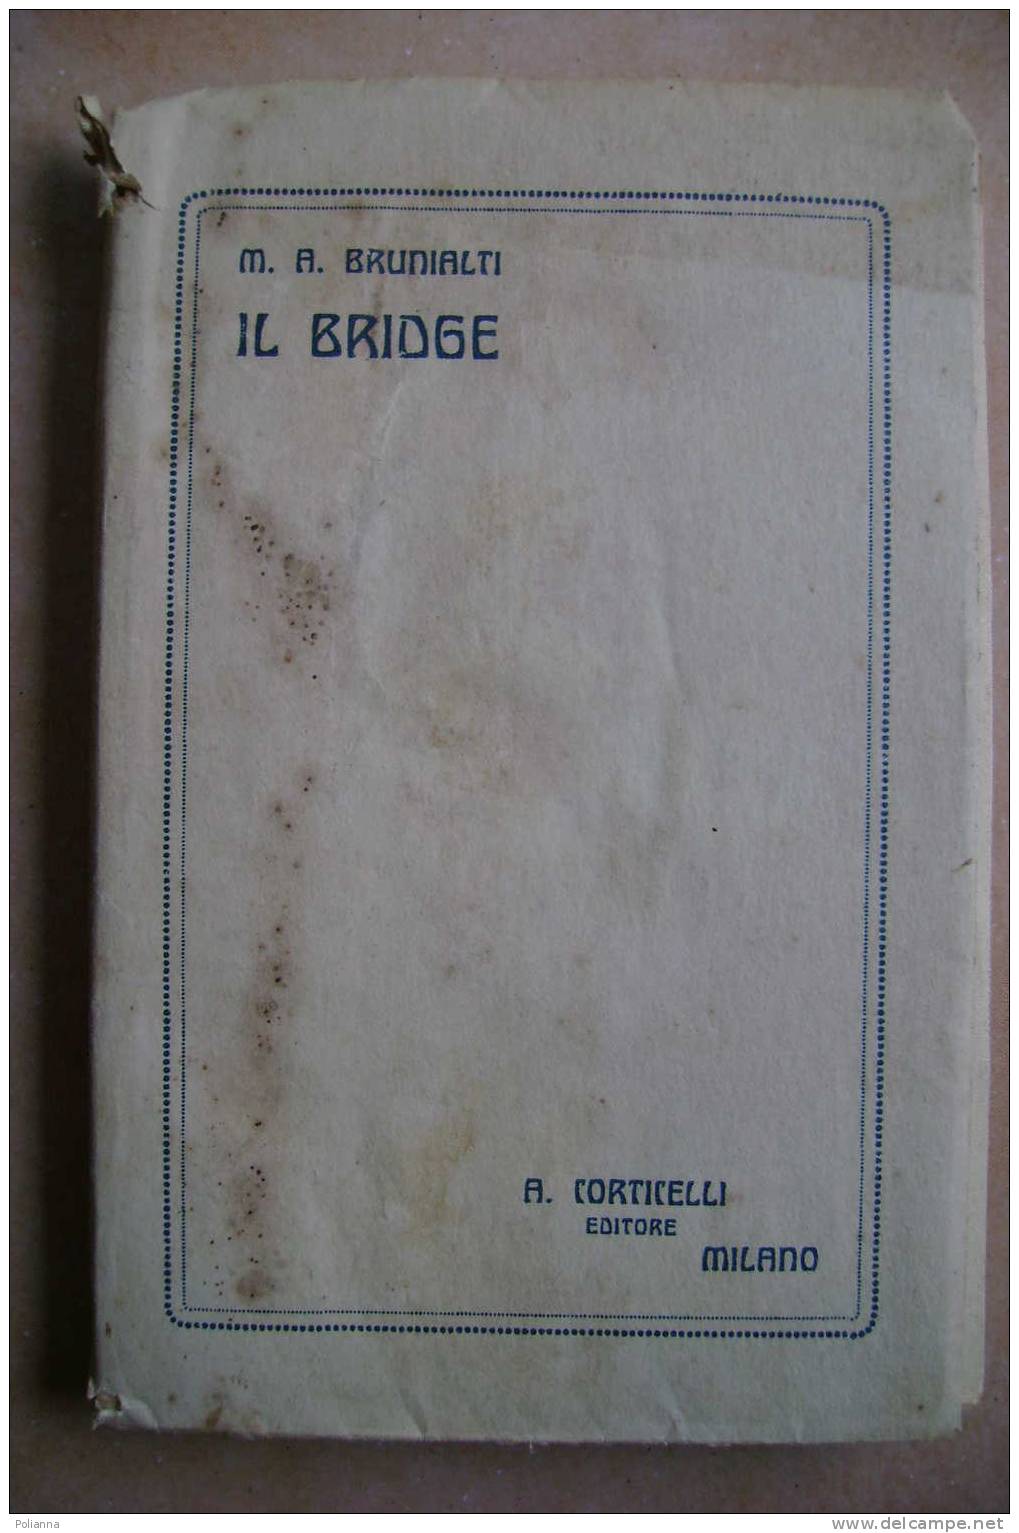 PDM/16 Brunialti IL BRIDGE Corticelli Editore 1923/giochi Carte - Spiele